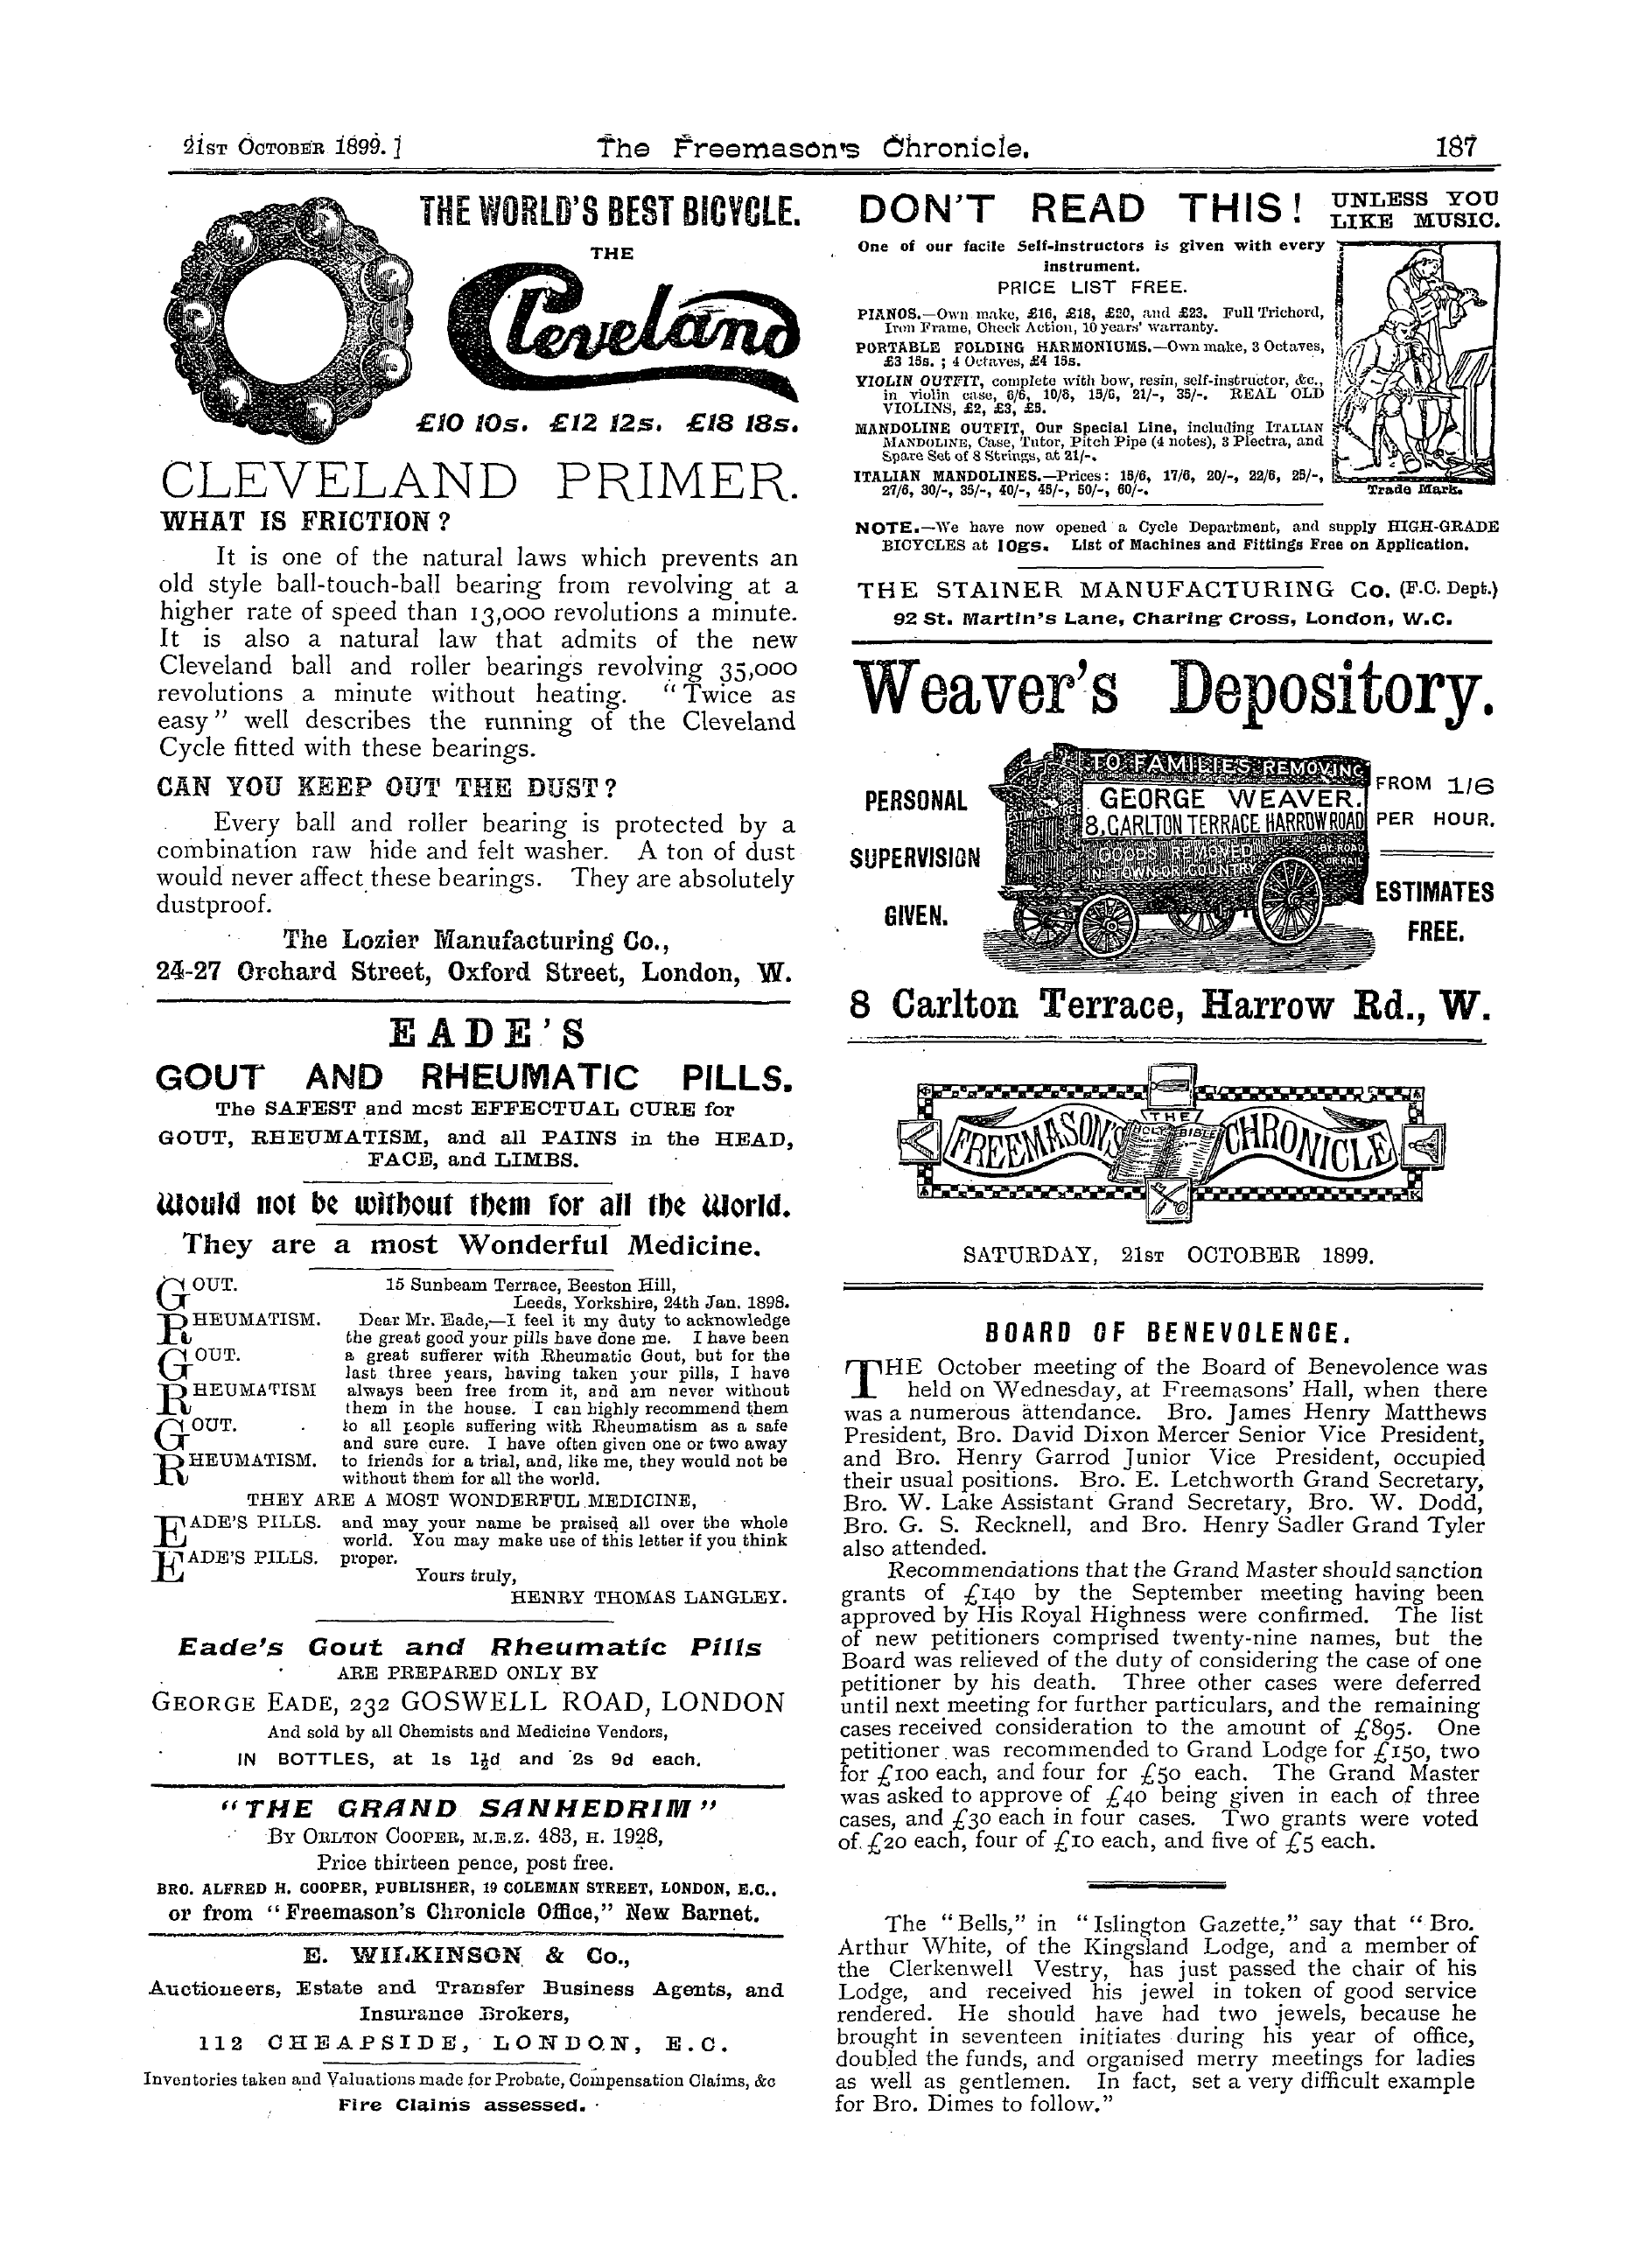 The Freemason's Chronicle: 1899-10-21 - Ar00705